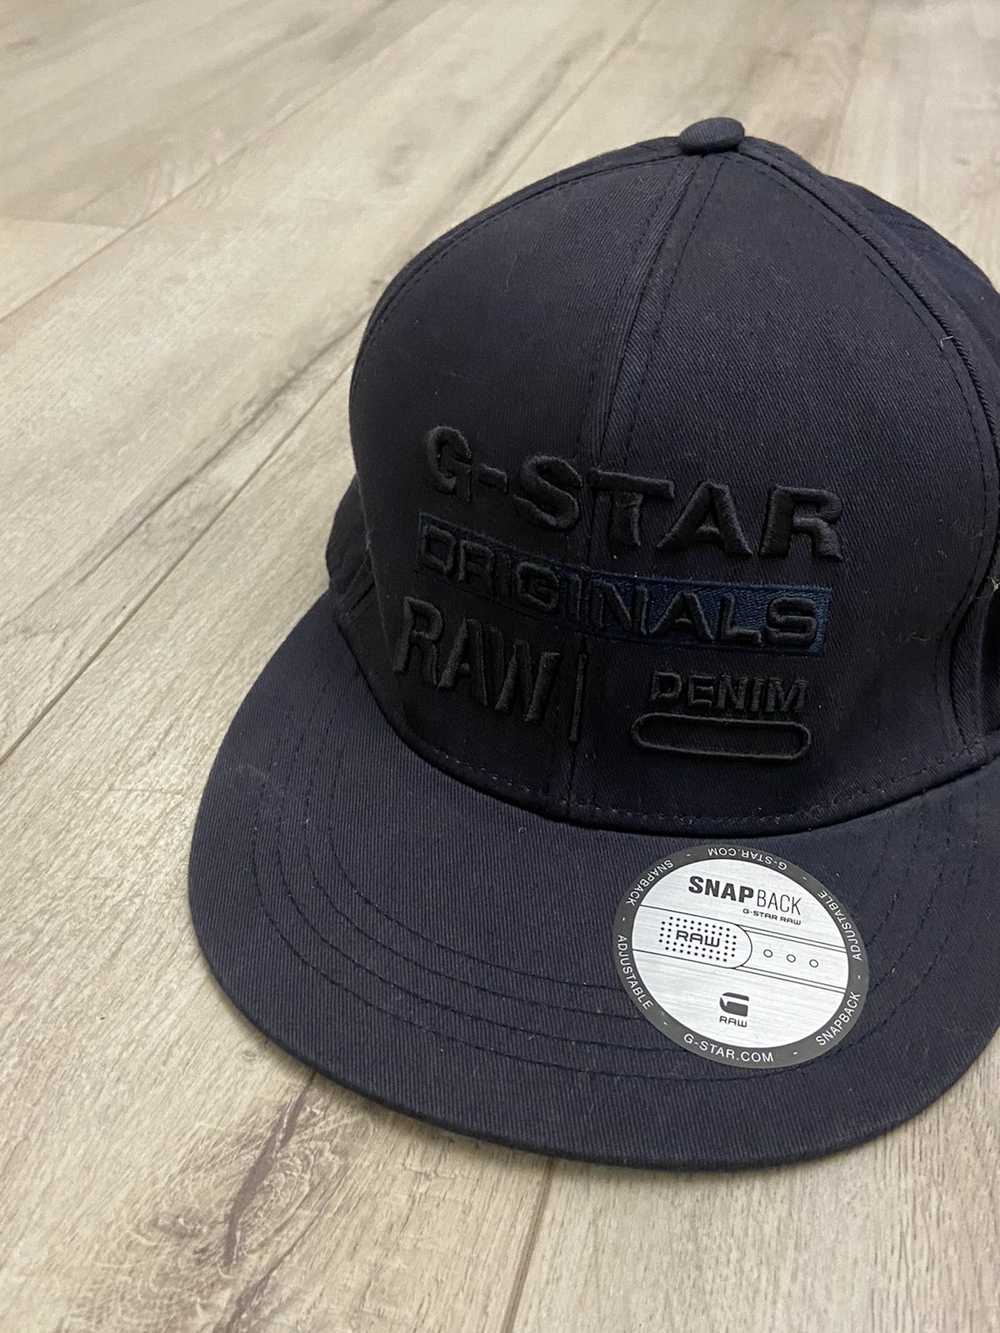 G Star Raw × Gstar G star raw y2k cap vintage - image 3